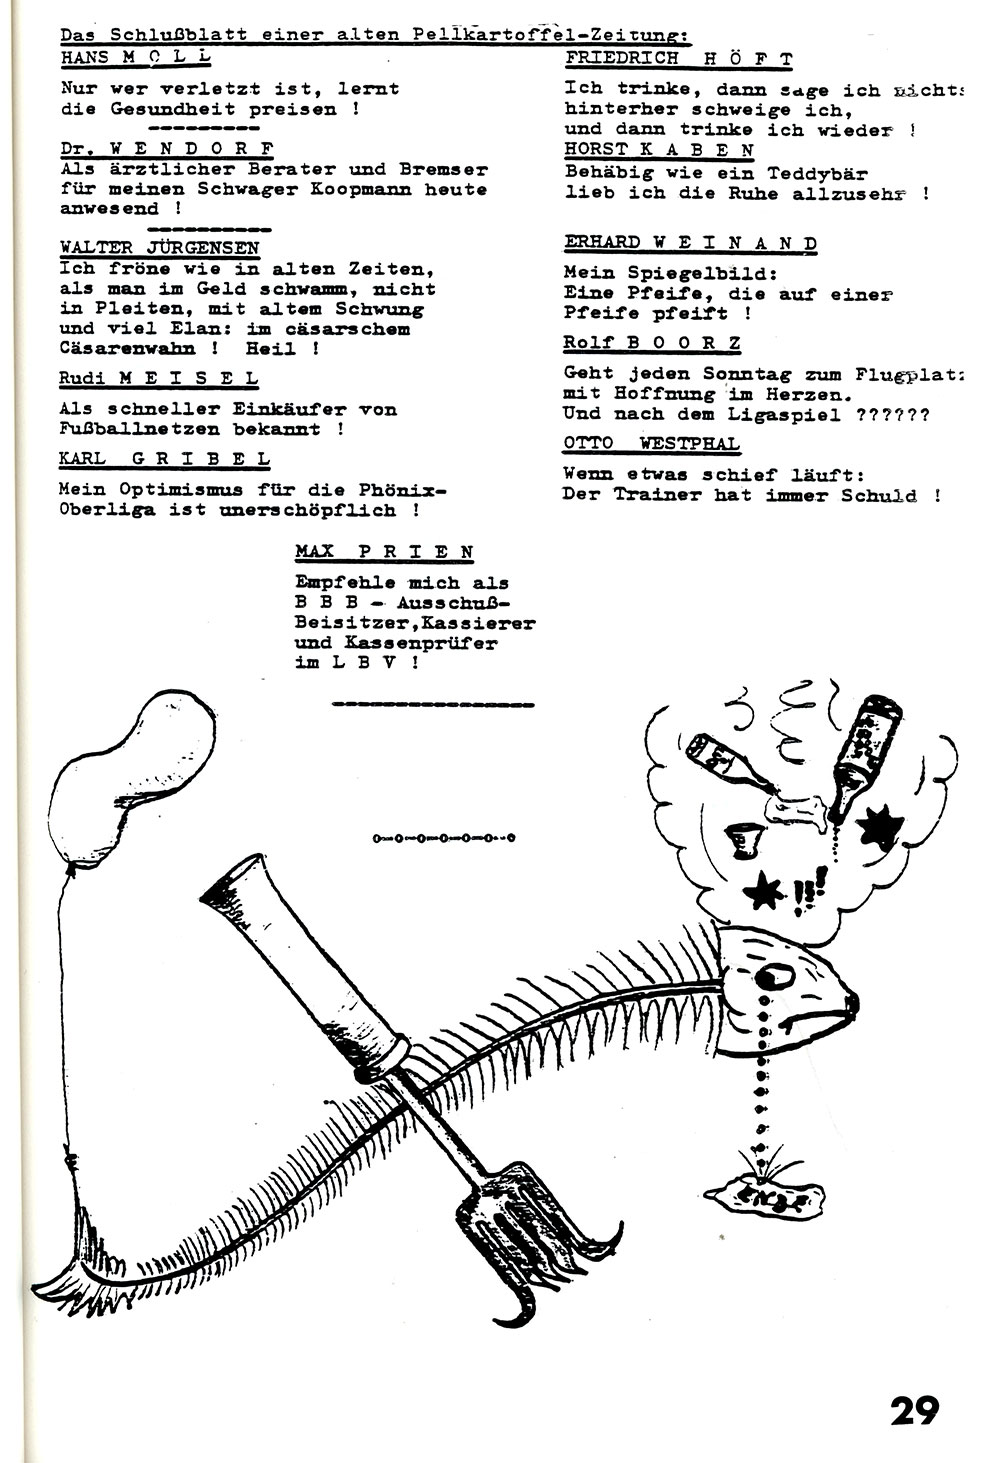 30 Jahre Pellkartoffelessen 1988. Eine Jubiläumszeitung.